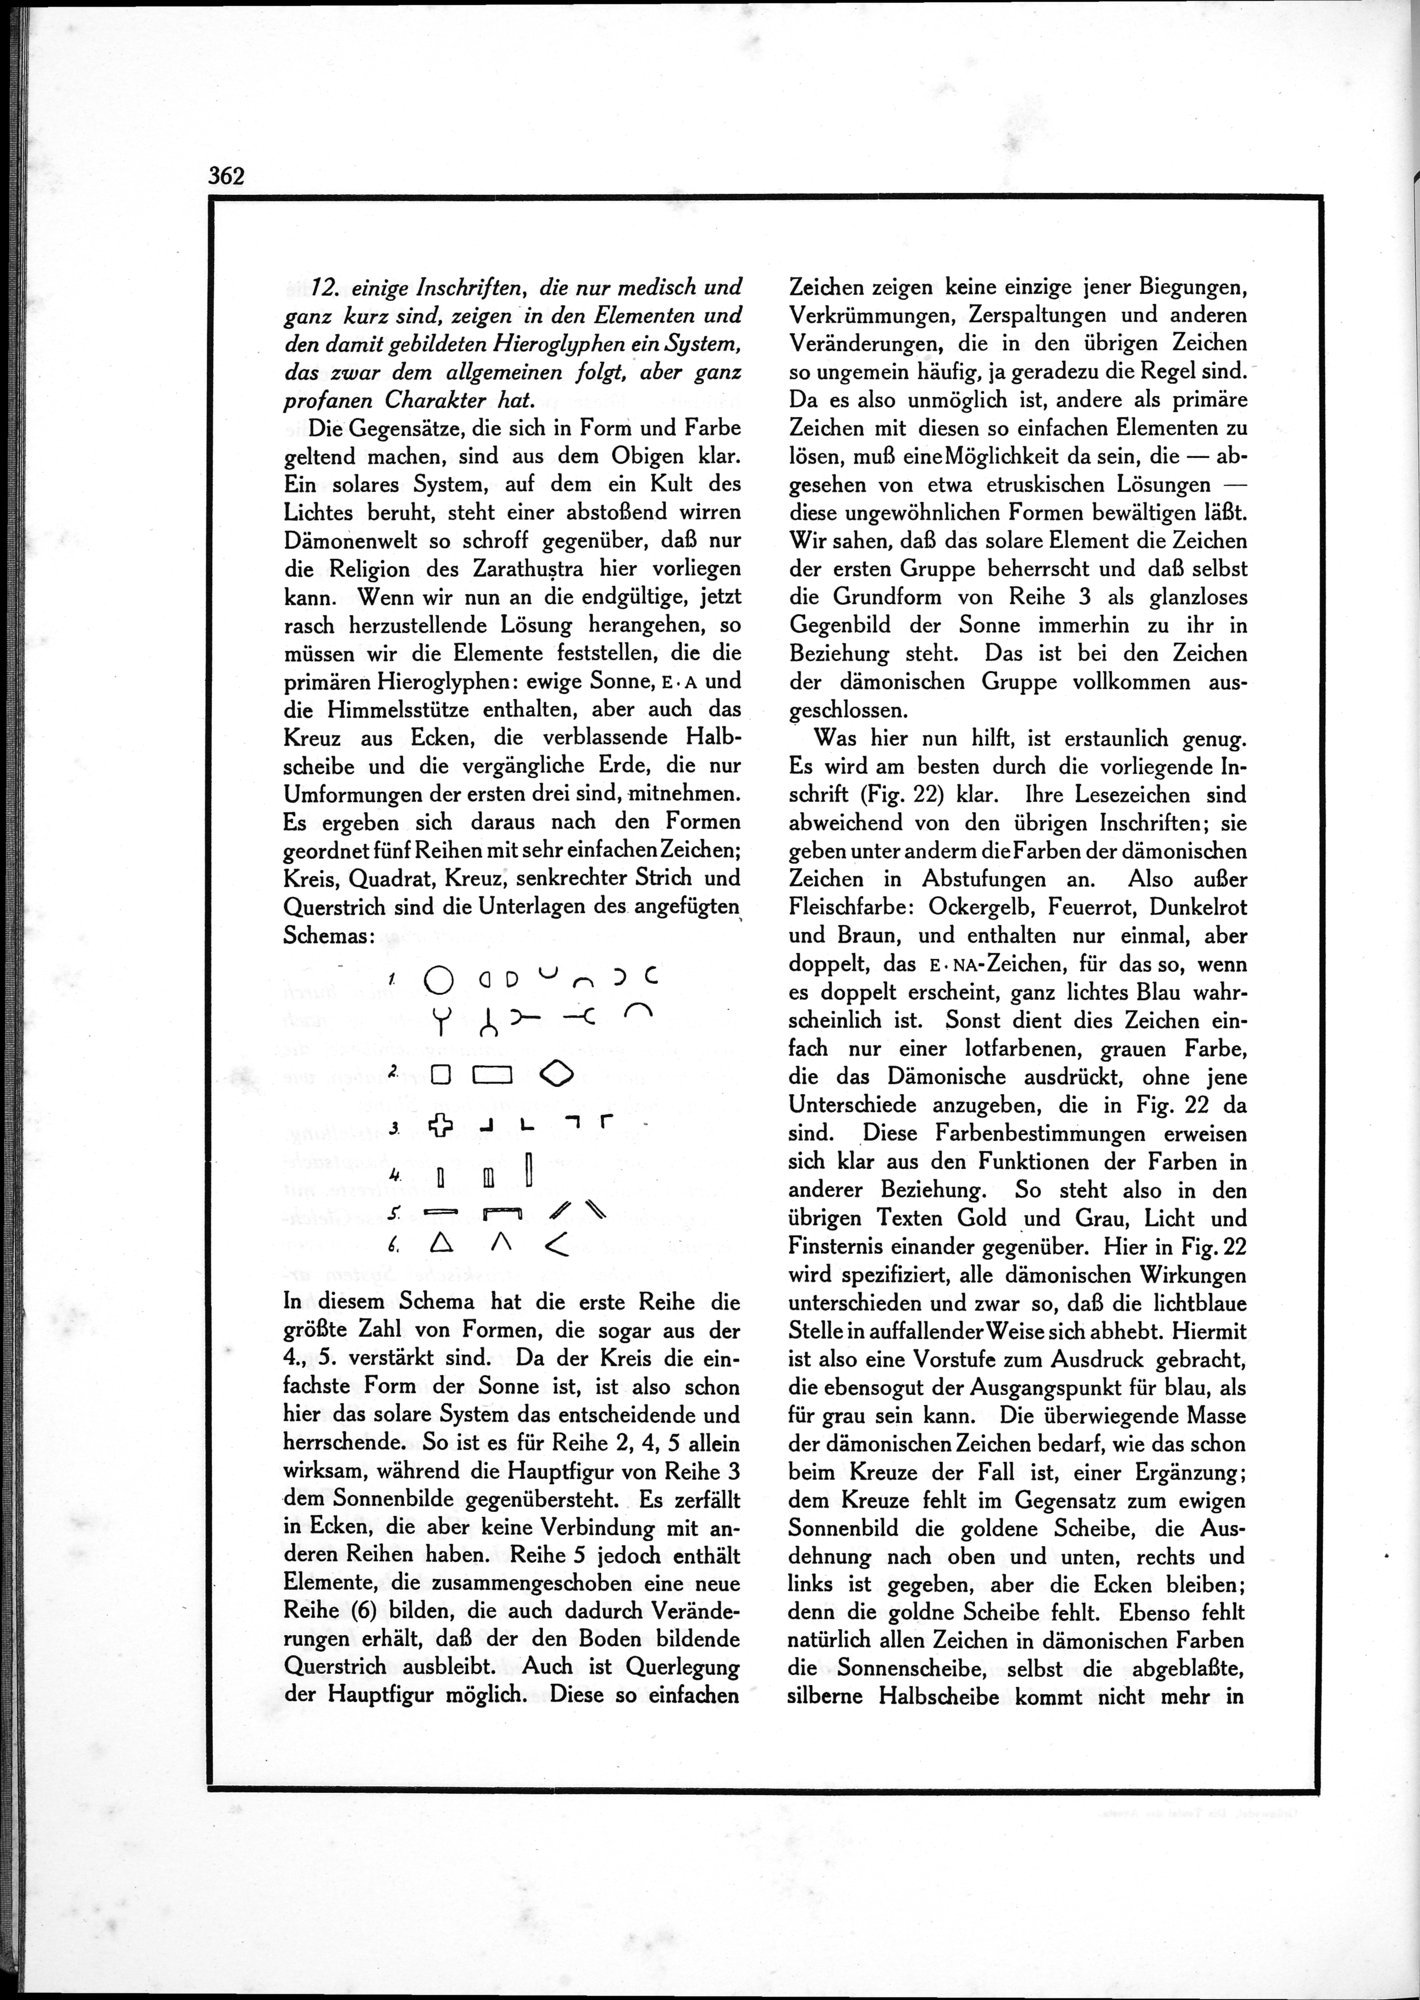 Die Teufel des Avesta und Ihre Beziehungen zur Ikonographie des Buddhismus Zentral-Asiens : vol.1 / Page 366 (Grayscale High Resolution Image)